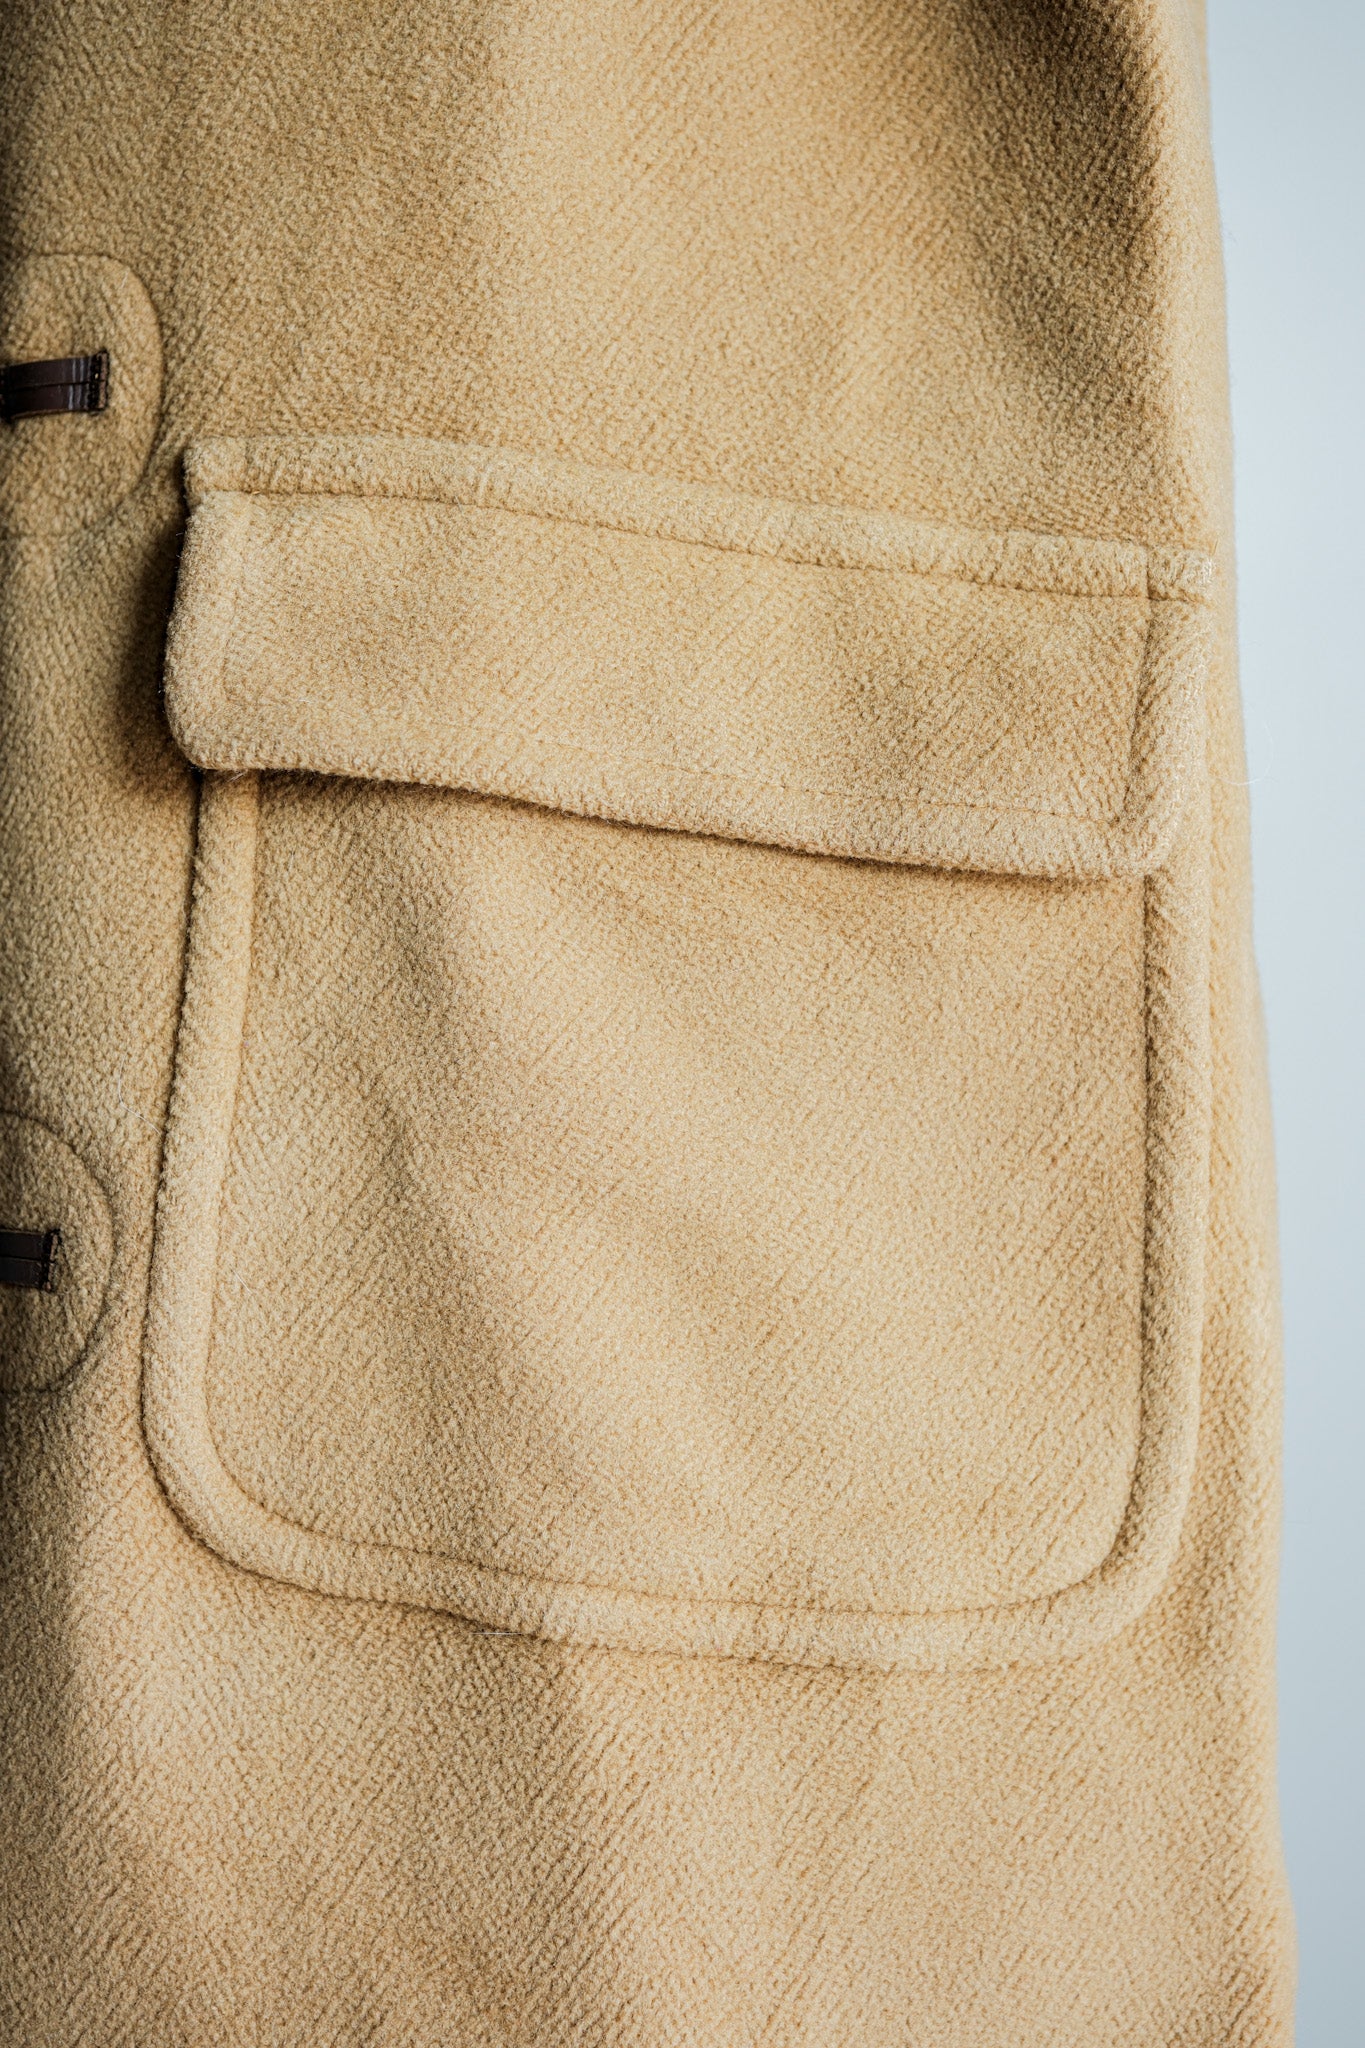 [〜90年代]舊的逆變器HBT羊毛行李外套尺寸。38r“ Moorbrook”